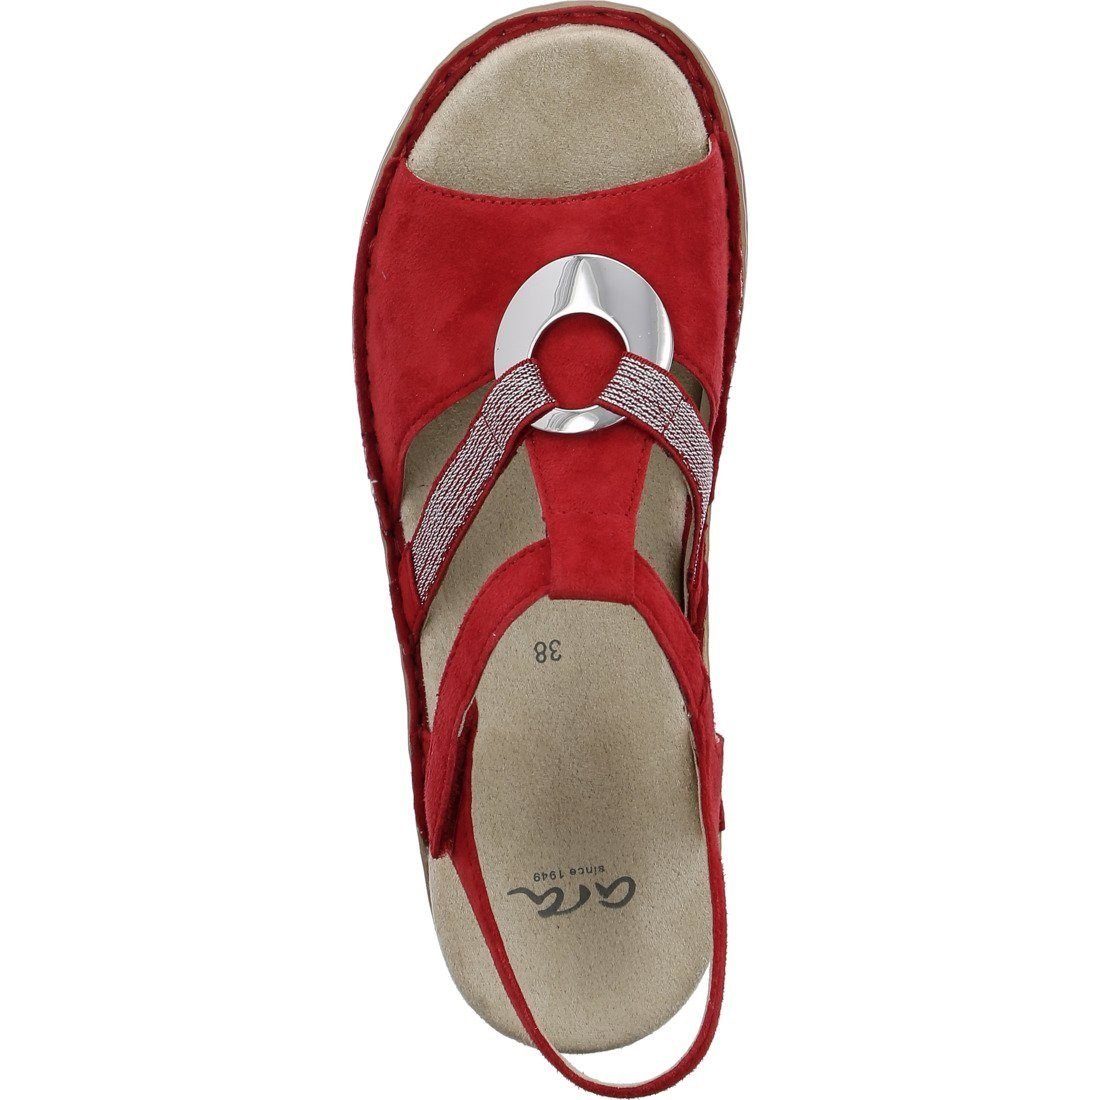 Sandale mit Glitzerriemchen HAWAII modischen Ara 045319 rot